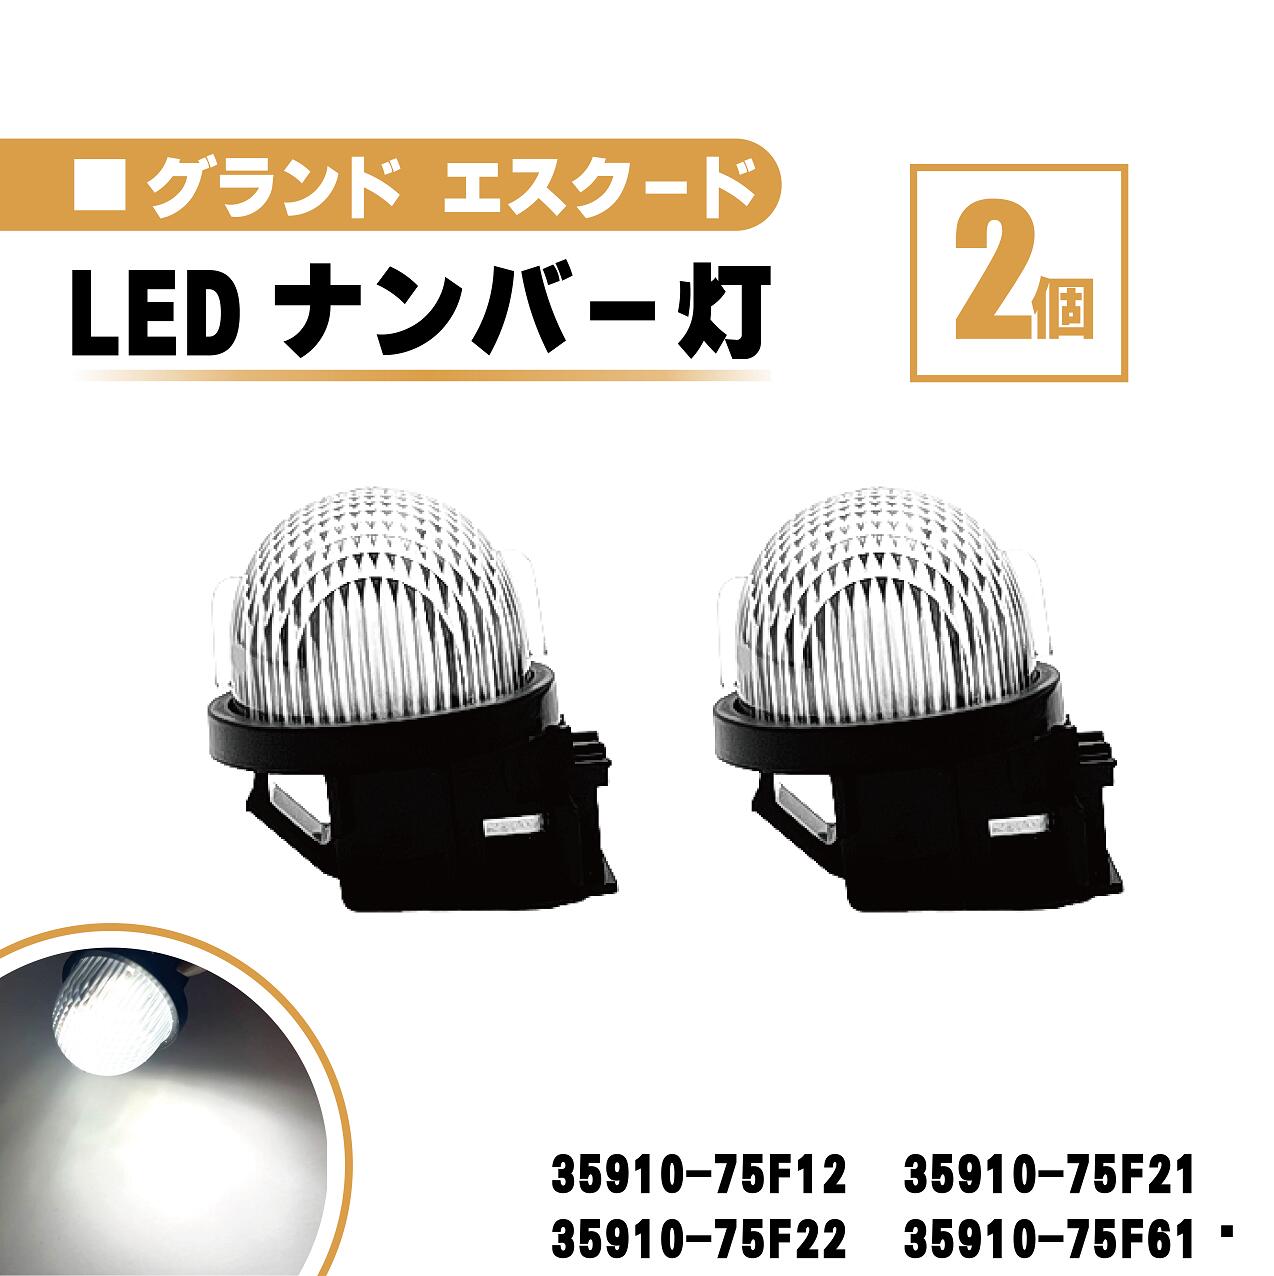 スズキ グランドエスクード LED ナンバー 灯 2個 セット レンズ 一体型 リア ライセンスプレート ランプ ライト 白 ホワイト 高輝度 TX92 35910-75F12 35910-75F21 35910-75F22 35910-75F61